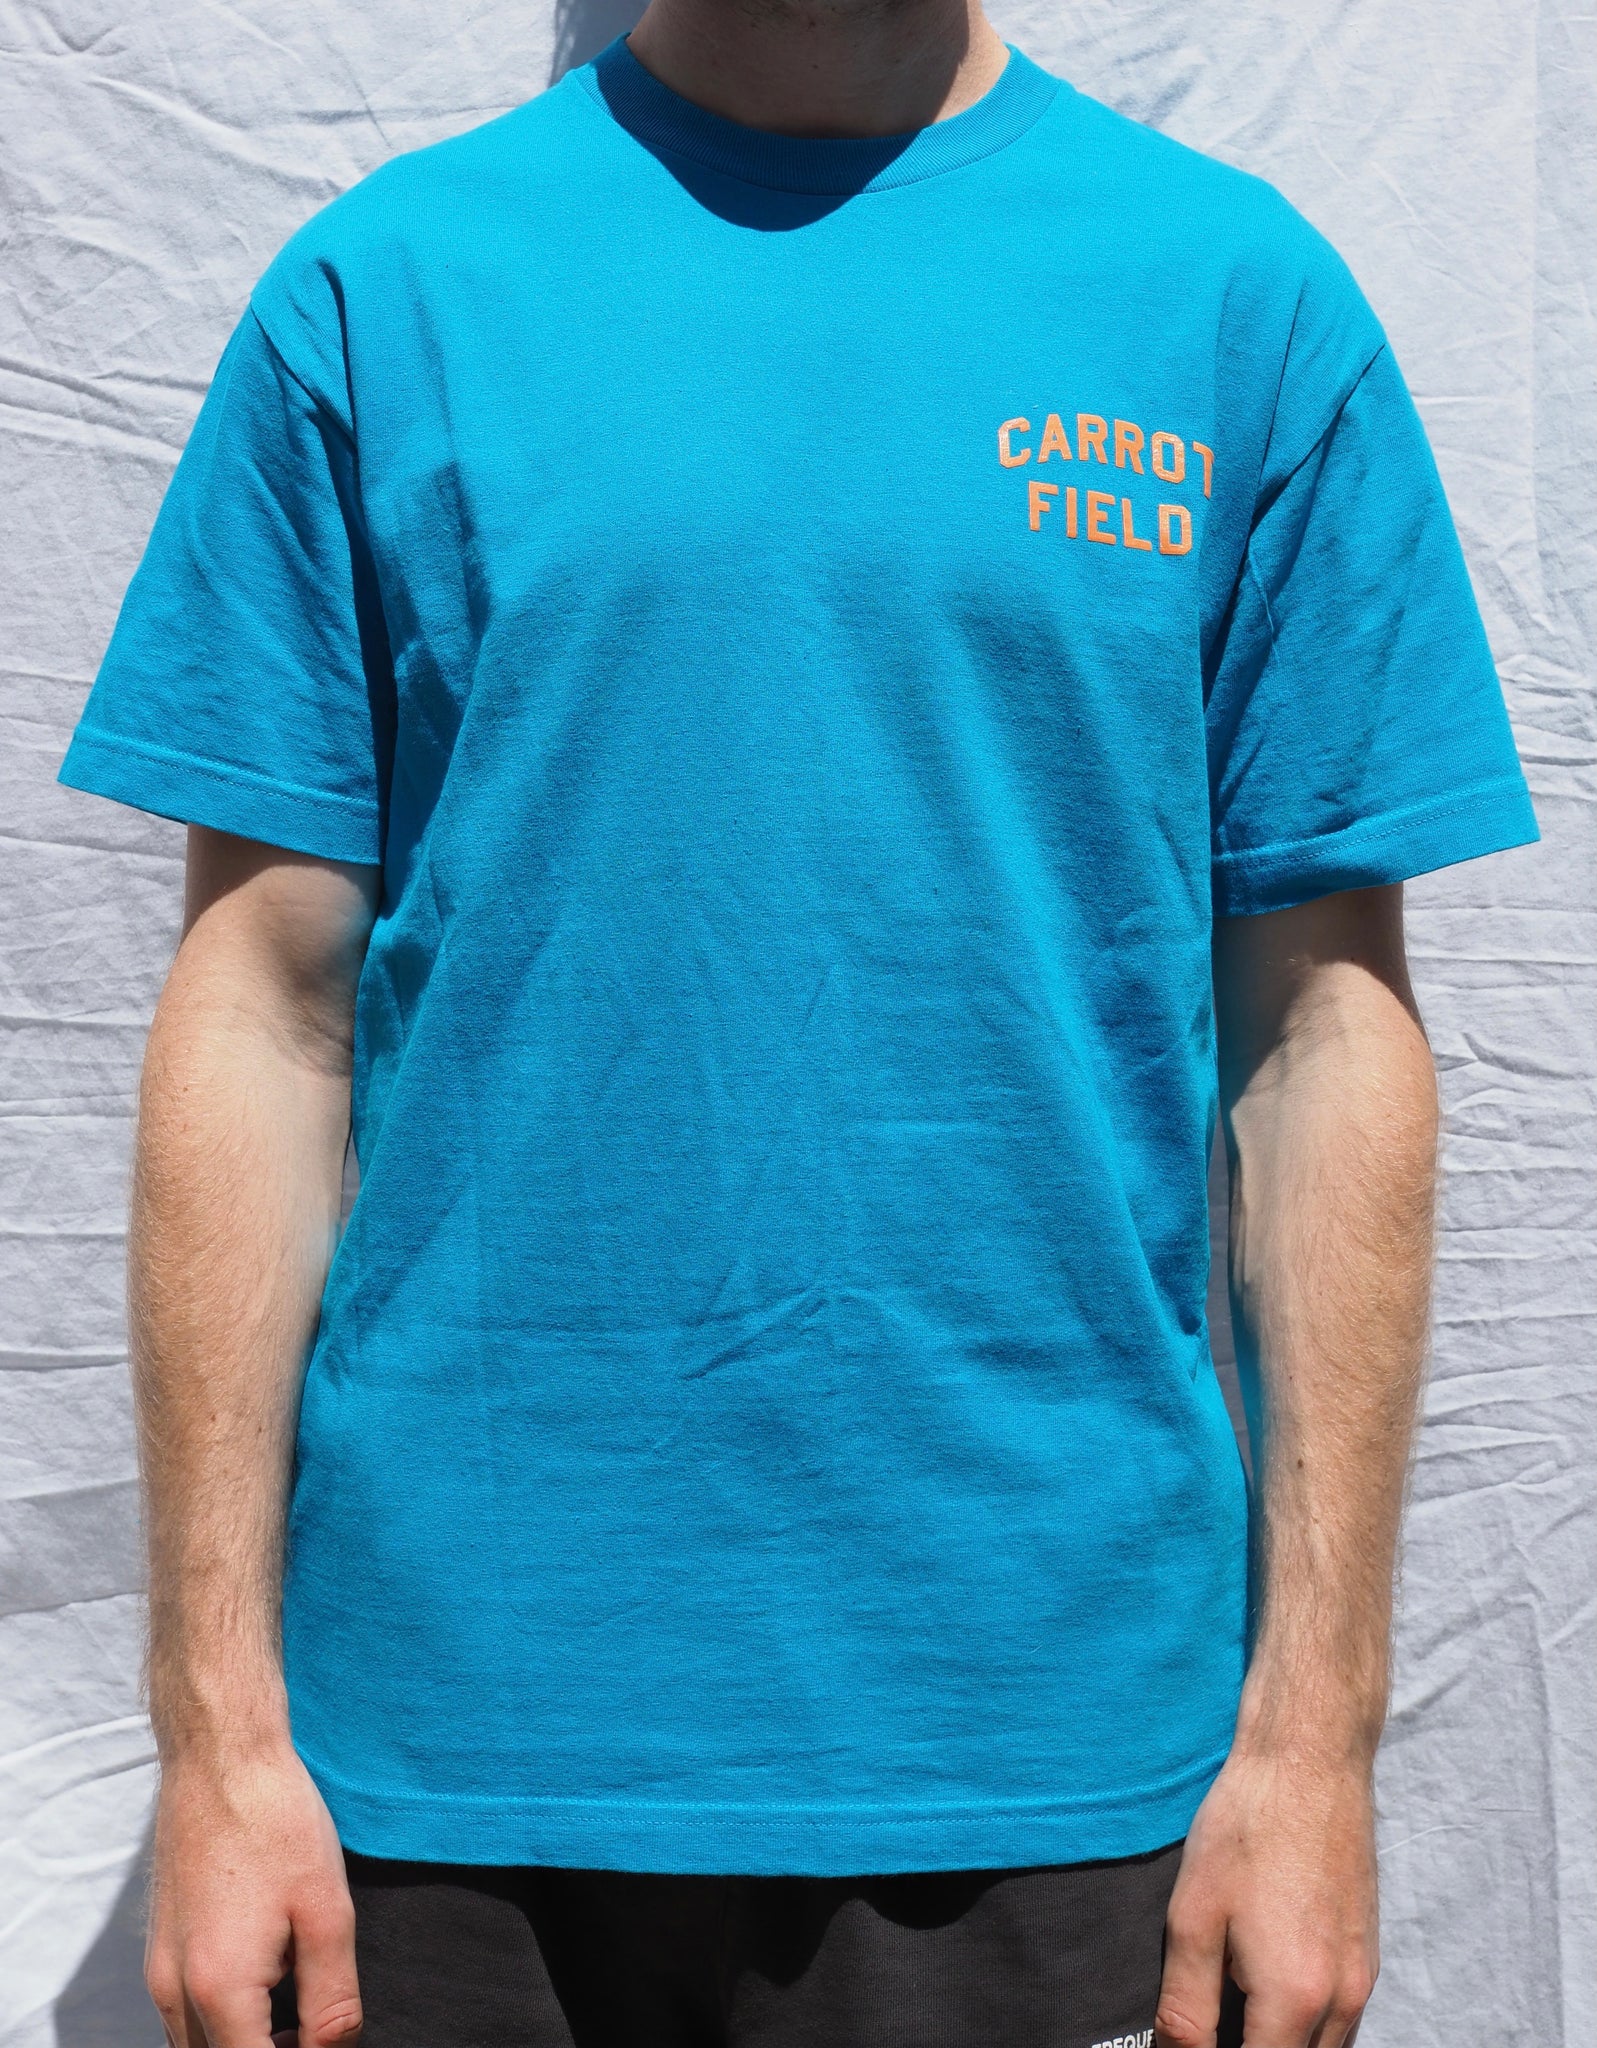 Carrots by Anwar Carrot - Carrot Field Blue T-shirt